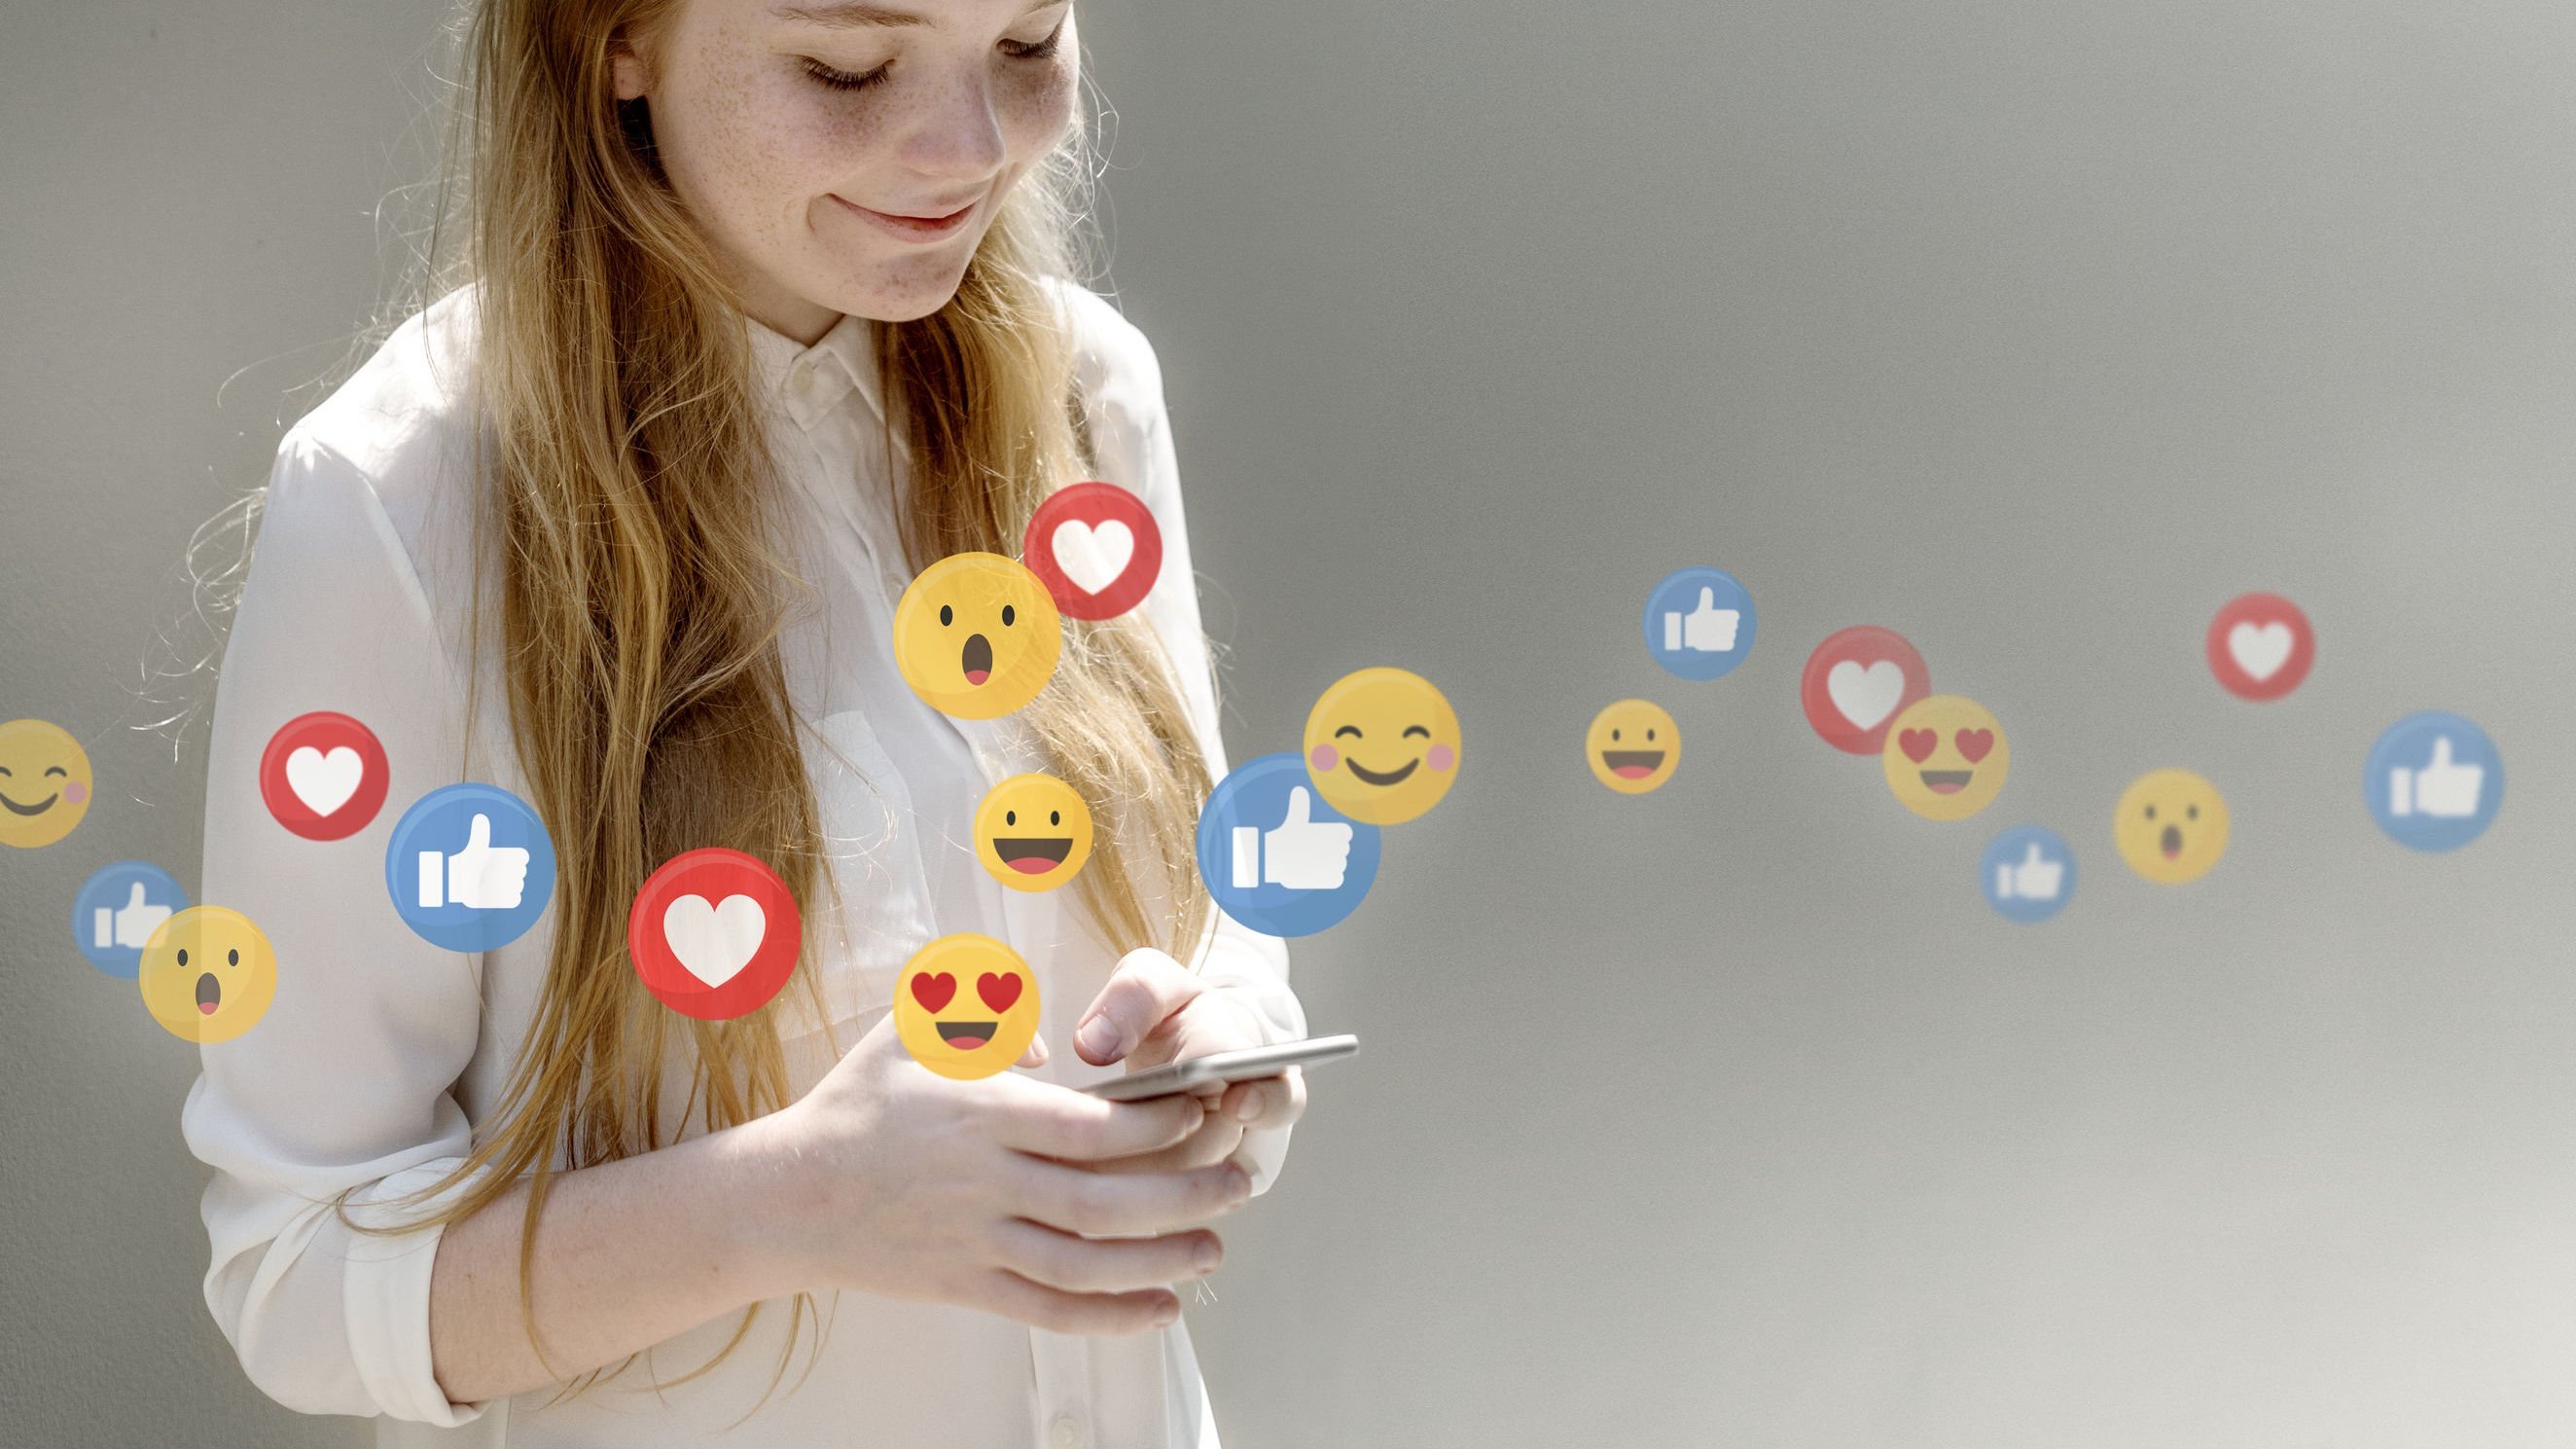 Menina sorrindo para o celular com emojis ilustrados sobre a foto.